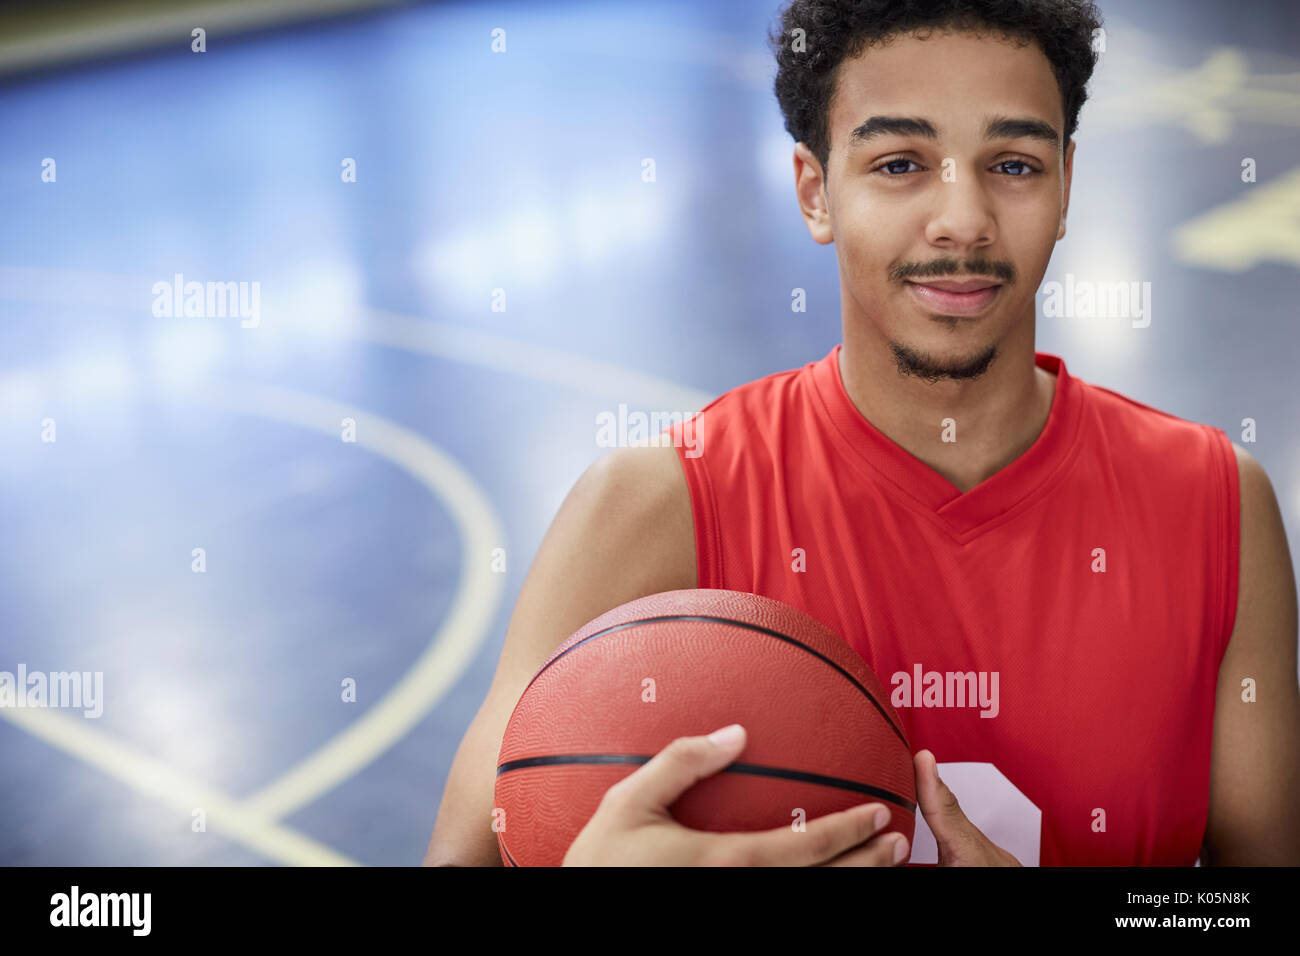 Portrait zuversichtlich, dass junge männliche Basketball Spieler mit Basketball auf Gericht Stockfoto